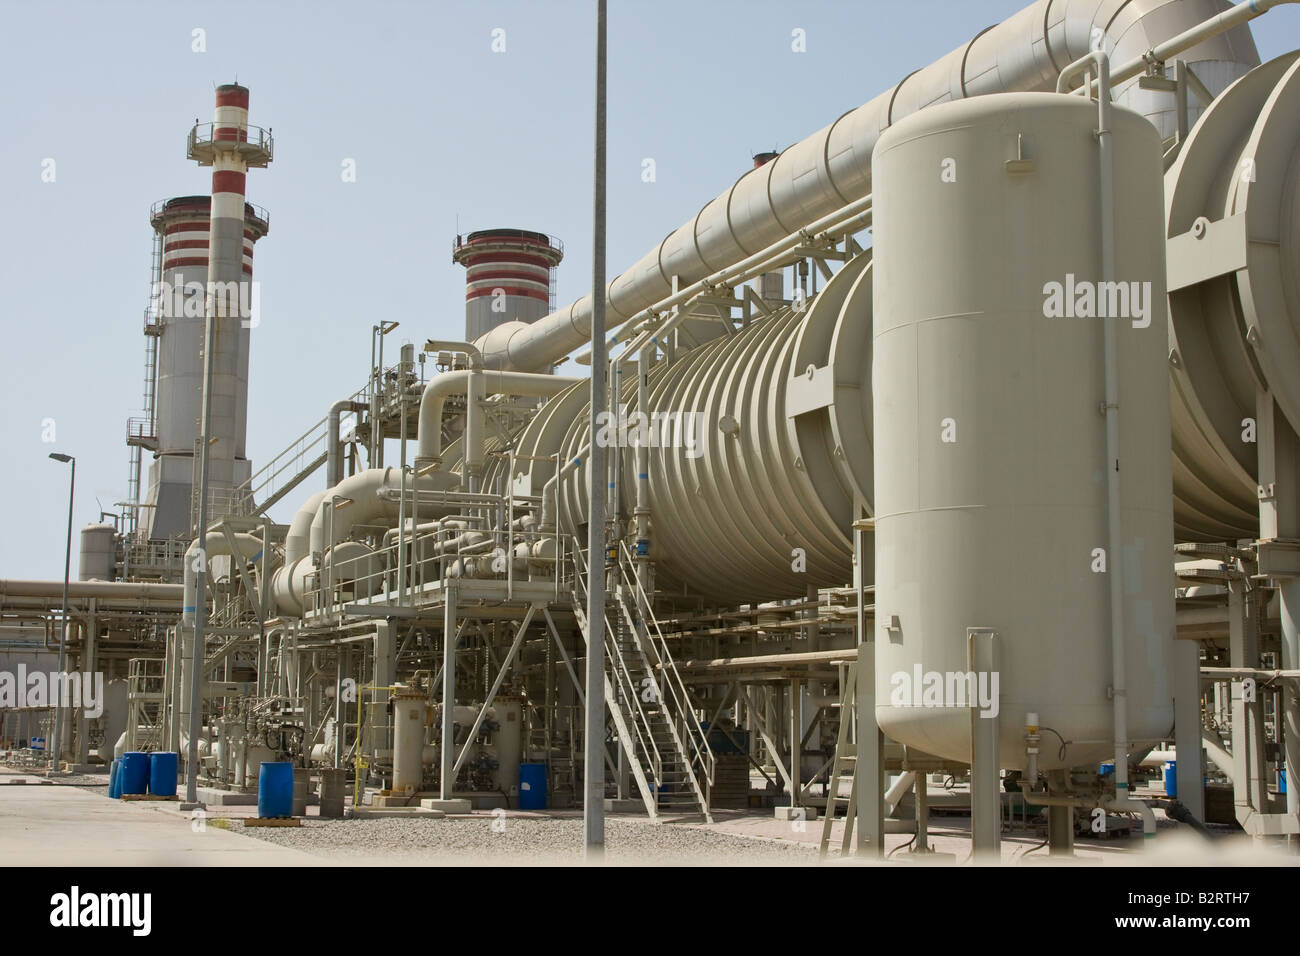 Desalinizzazione di acqua impianto di trattamento a Ras al Khaimah Emirati arabi uniti Foto Stock